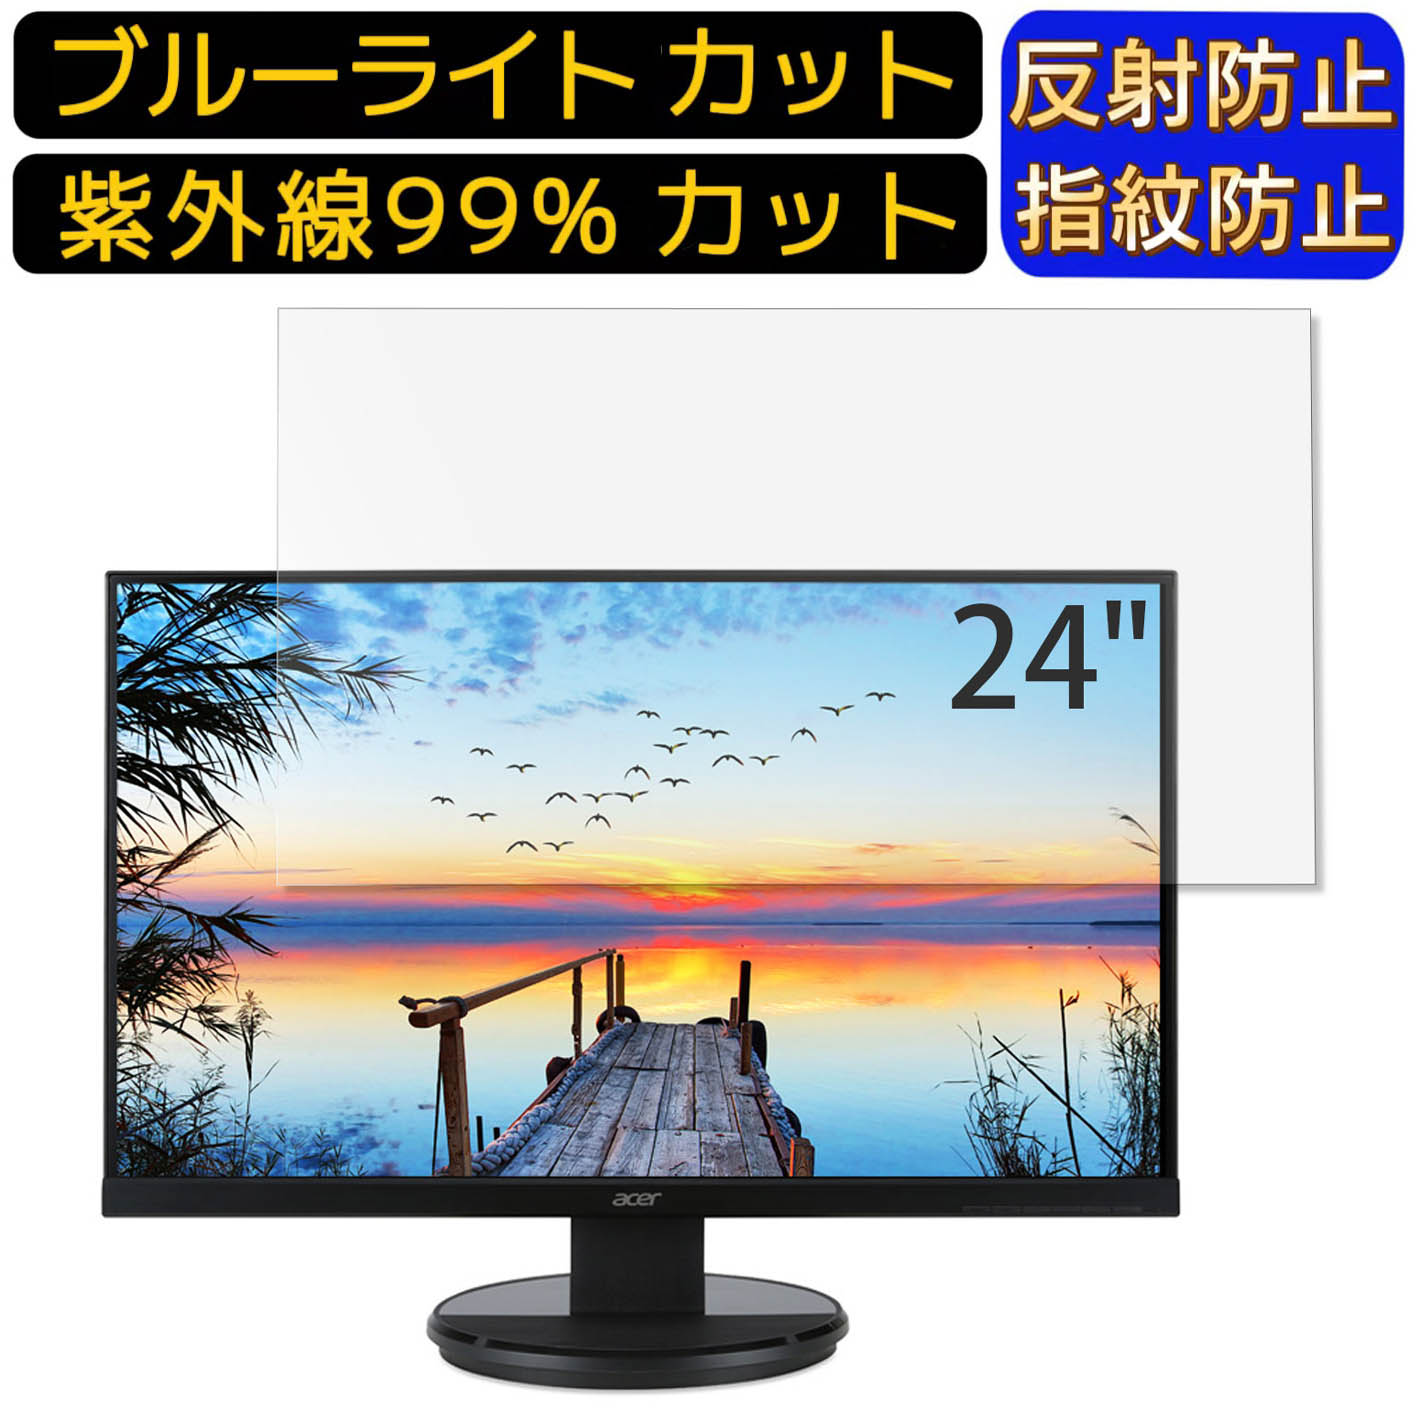 【ポイント2倍】Acer K242HLbmidx (K2) 24